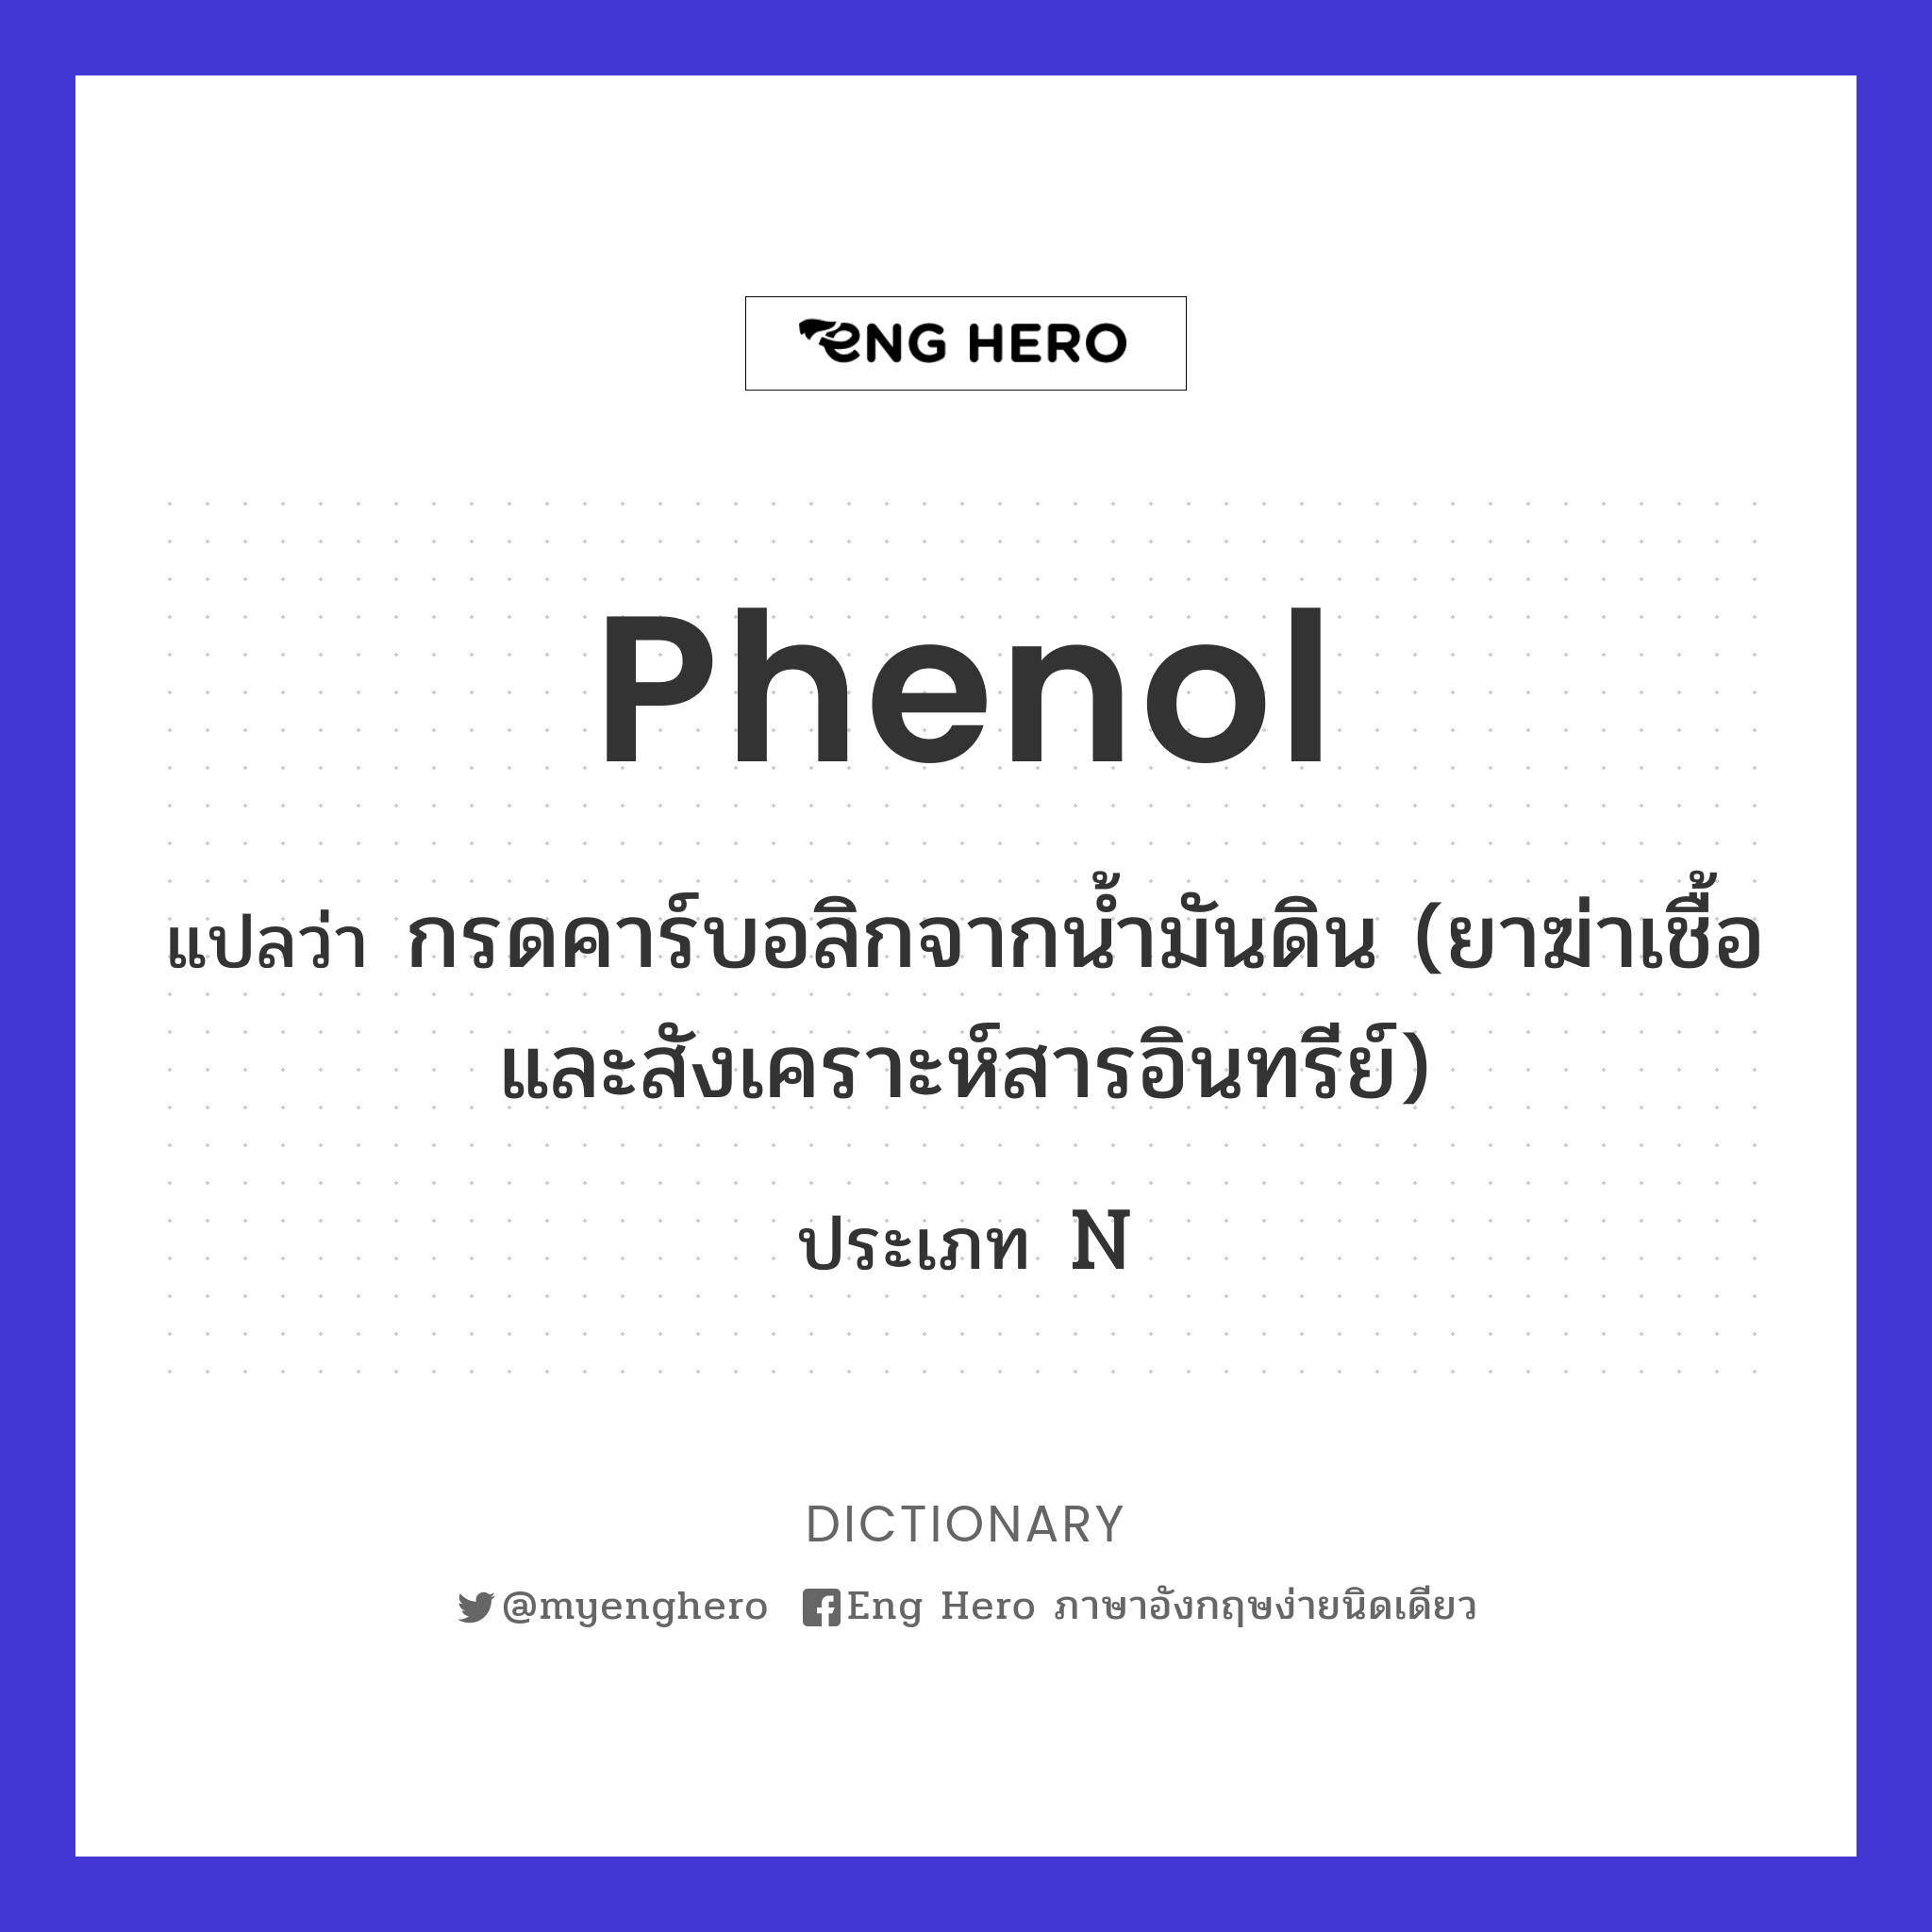 phenol